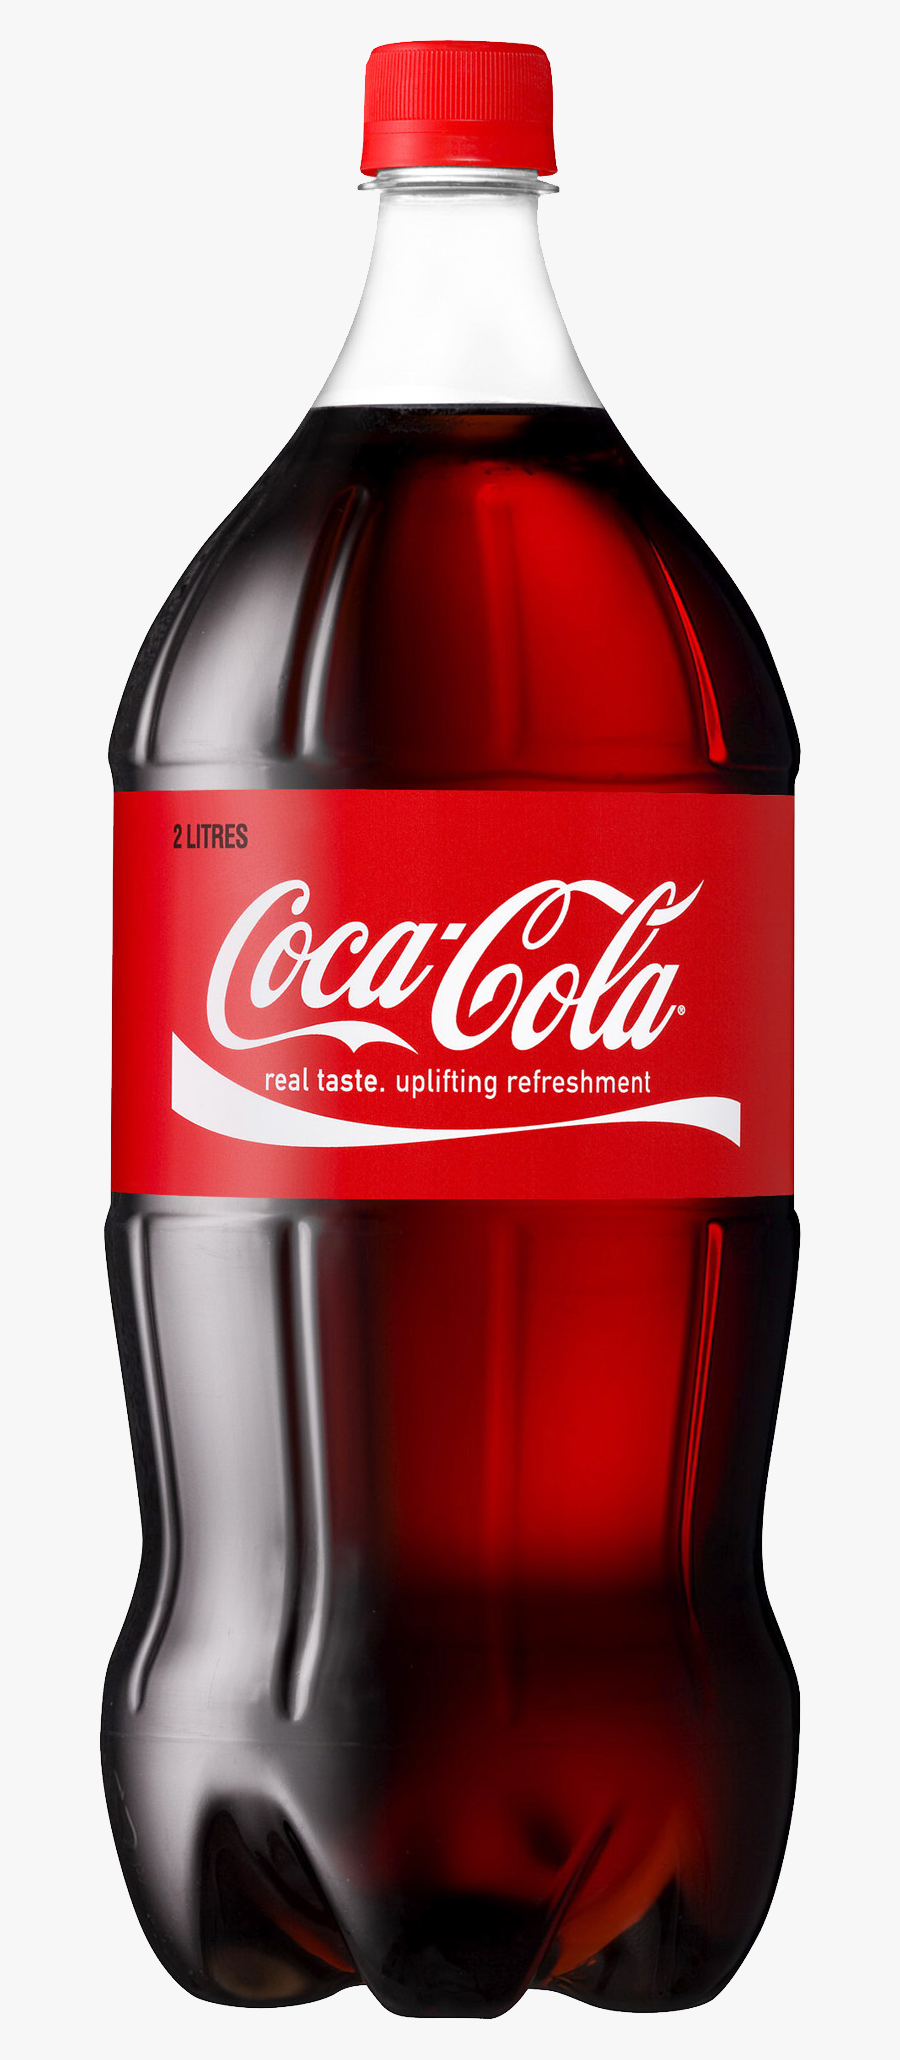 Coke Clipart Transparent Background - Coca Cola Bottle 2 Litre, Transparent Clipart